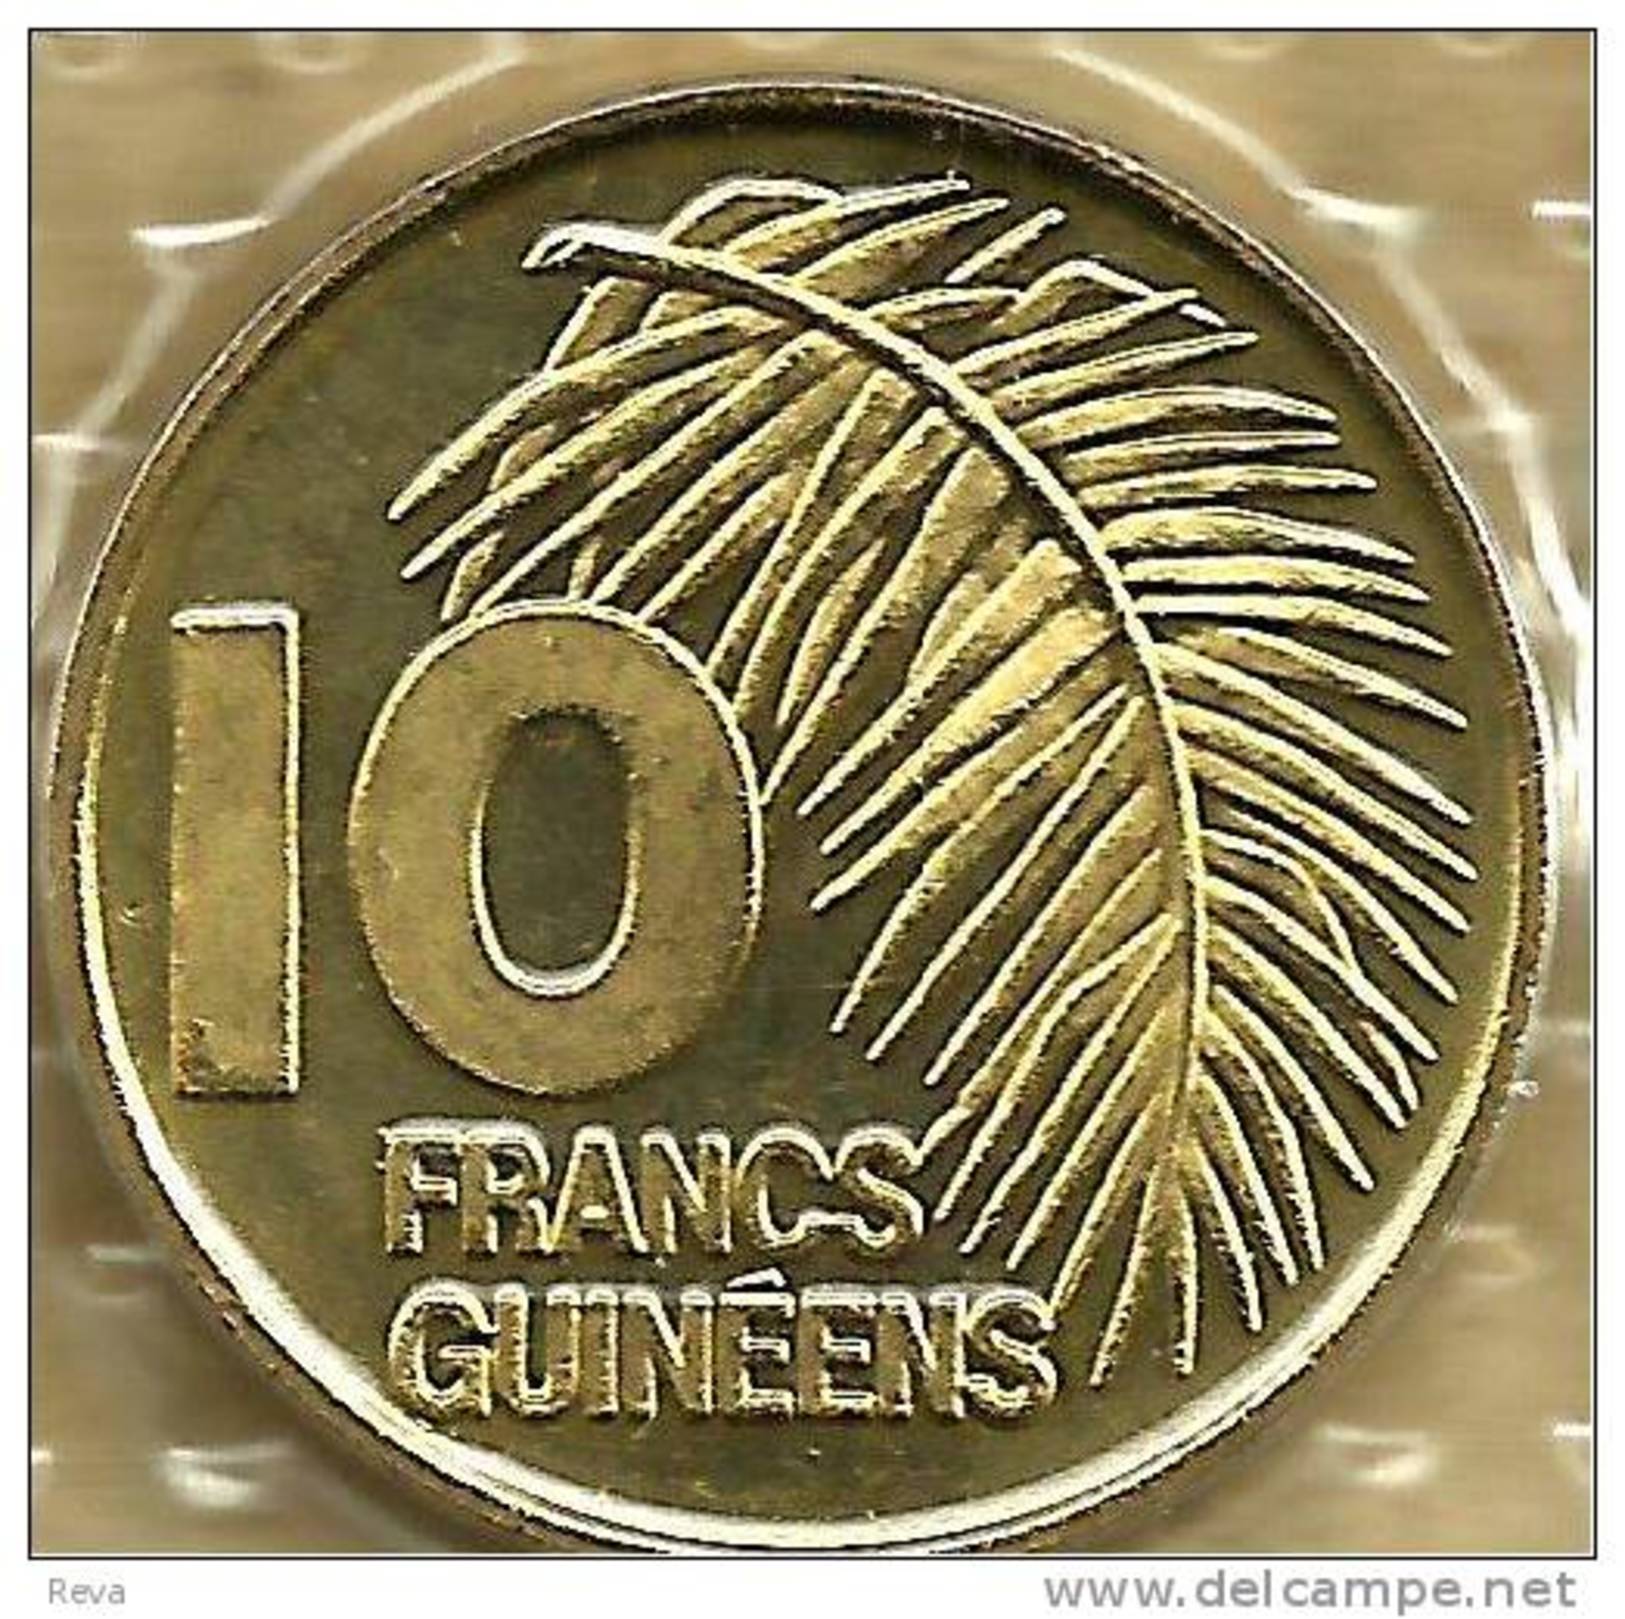 GUINEA 10 FRANCS PLANT FRONT EMBLEM BACK 1985  KM58(?) UNC READ DESCRIPTION CAREFULLY !!! - Guinée